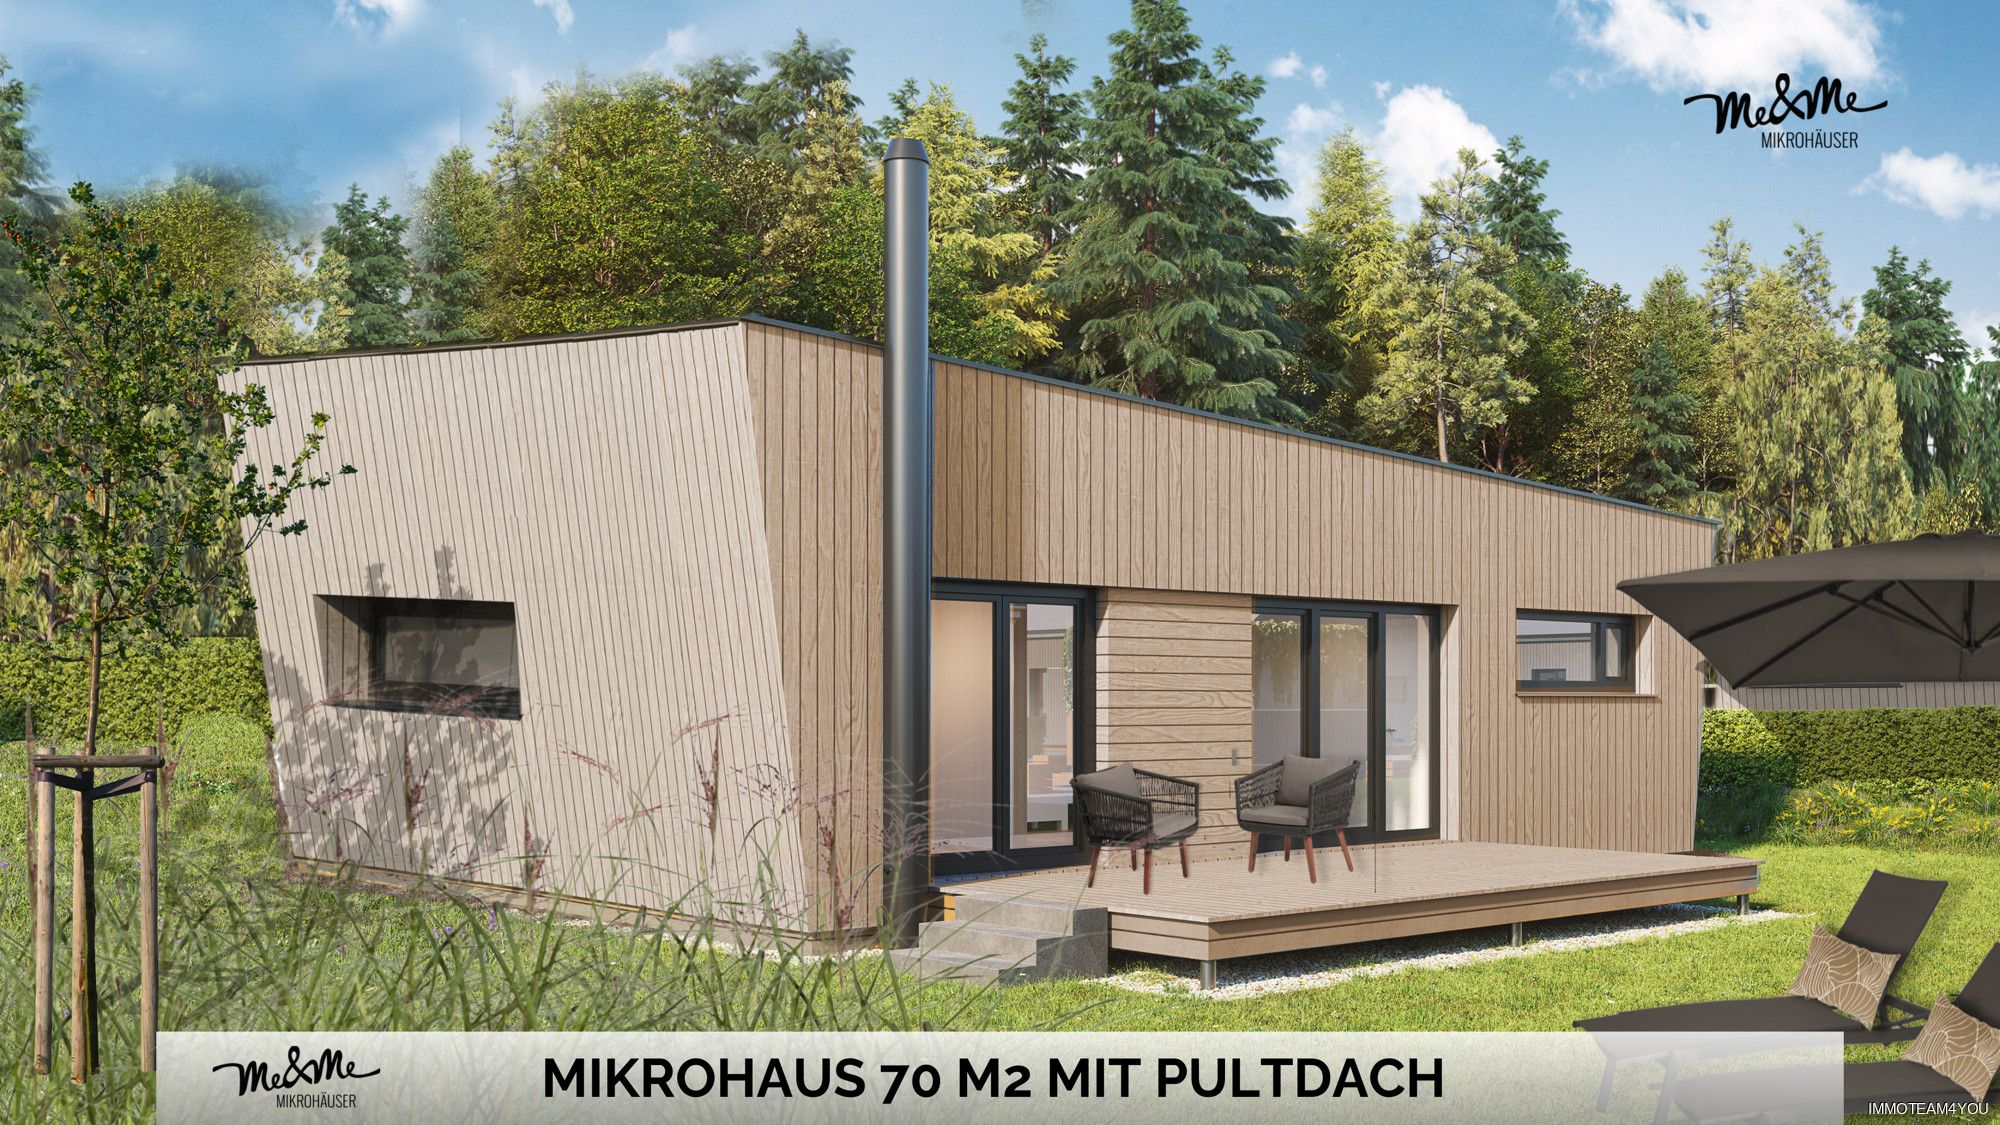 Dein ME & ME Mikrohaus 70 m2 mit 3 Zimmer Weniger ist mehr! Made in Austria!